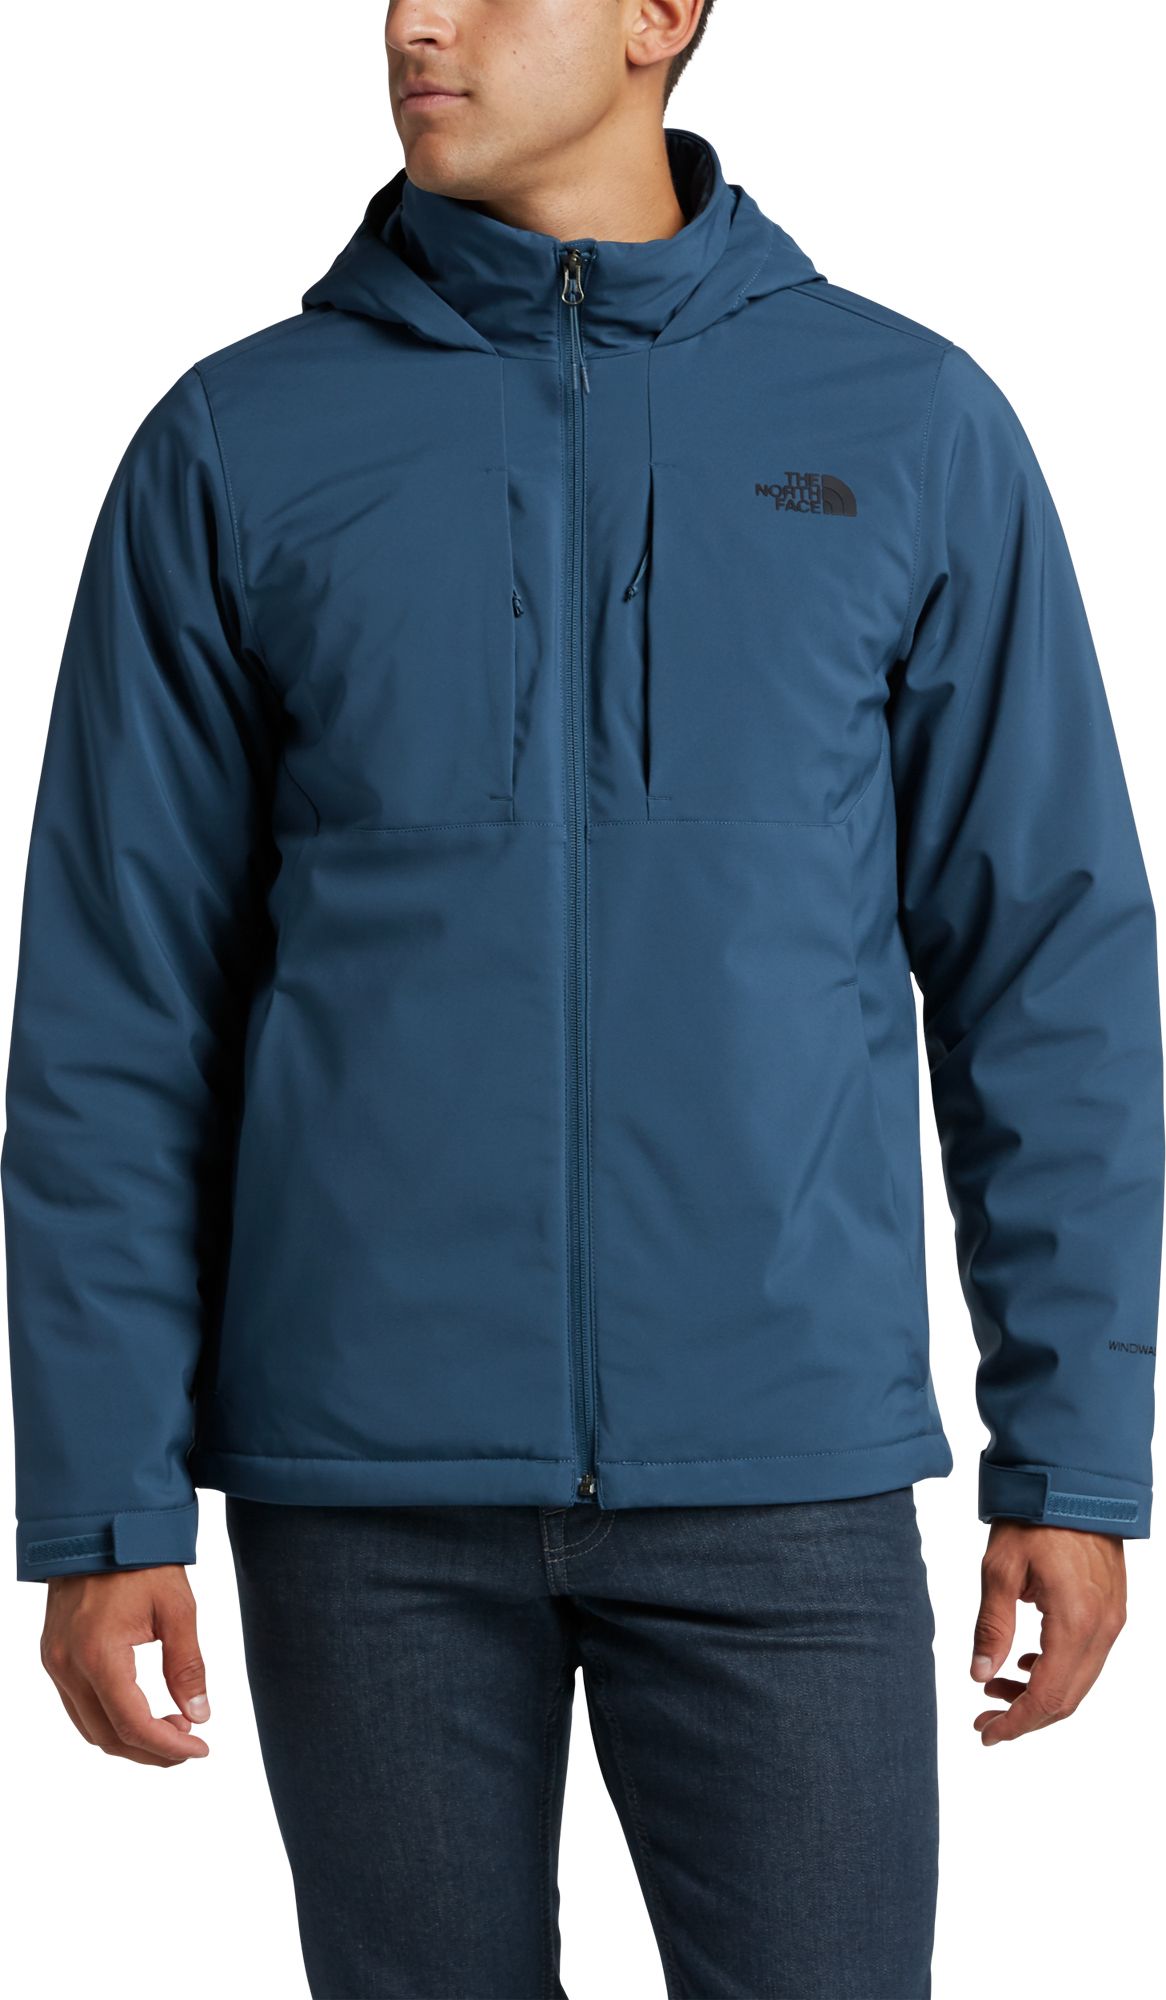 apex elevation jacket